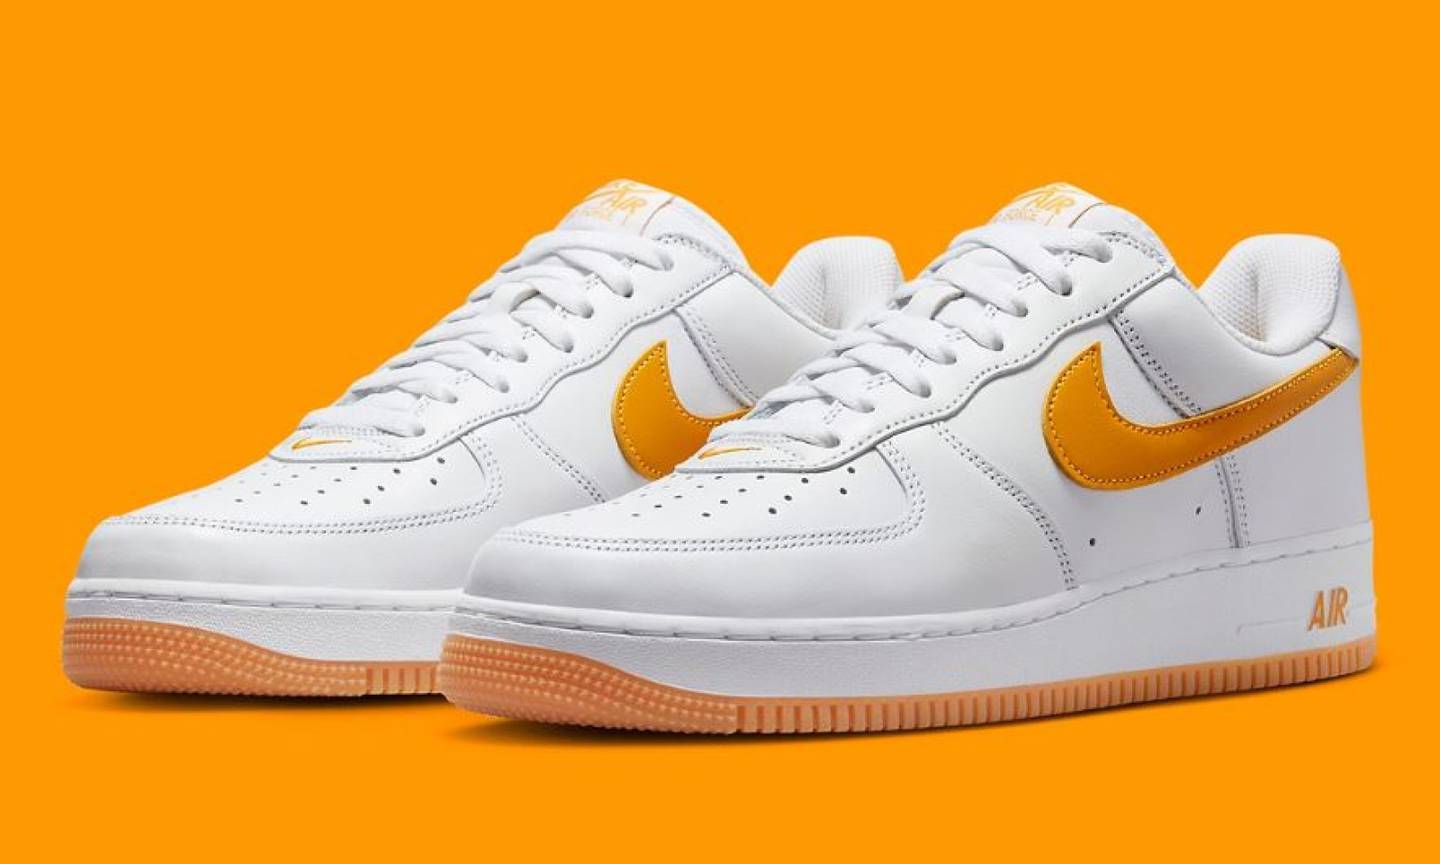 Nike Air Force 1 Low Orange Citrus